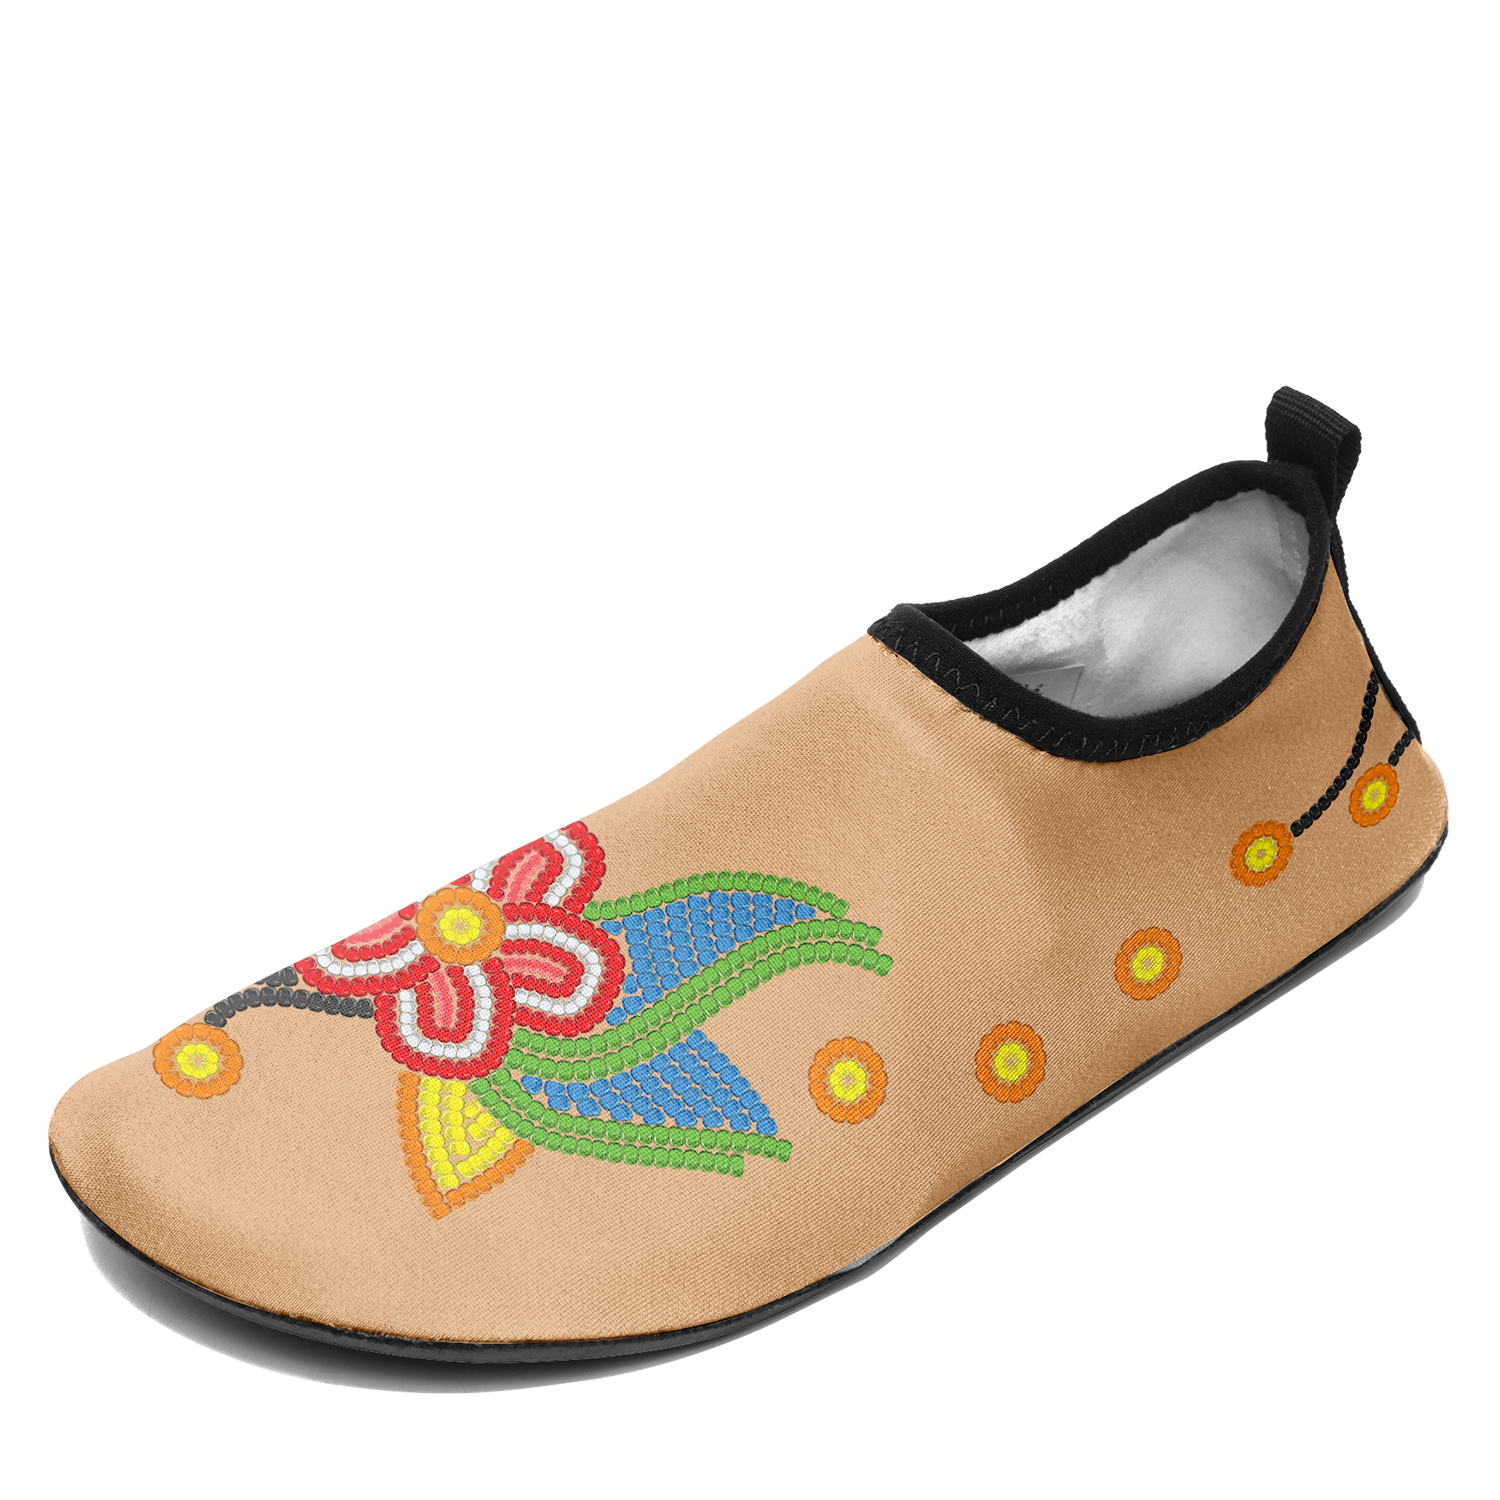 Desert Dream 2 Kid's Sockamoccs Slip On Shoes